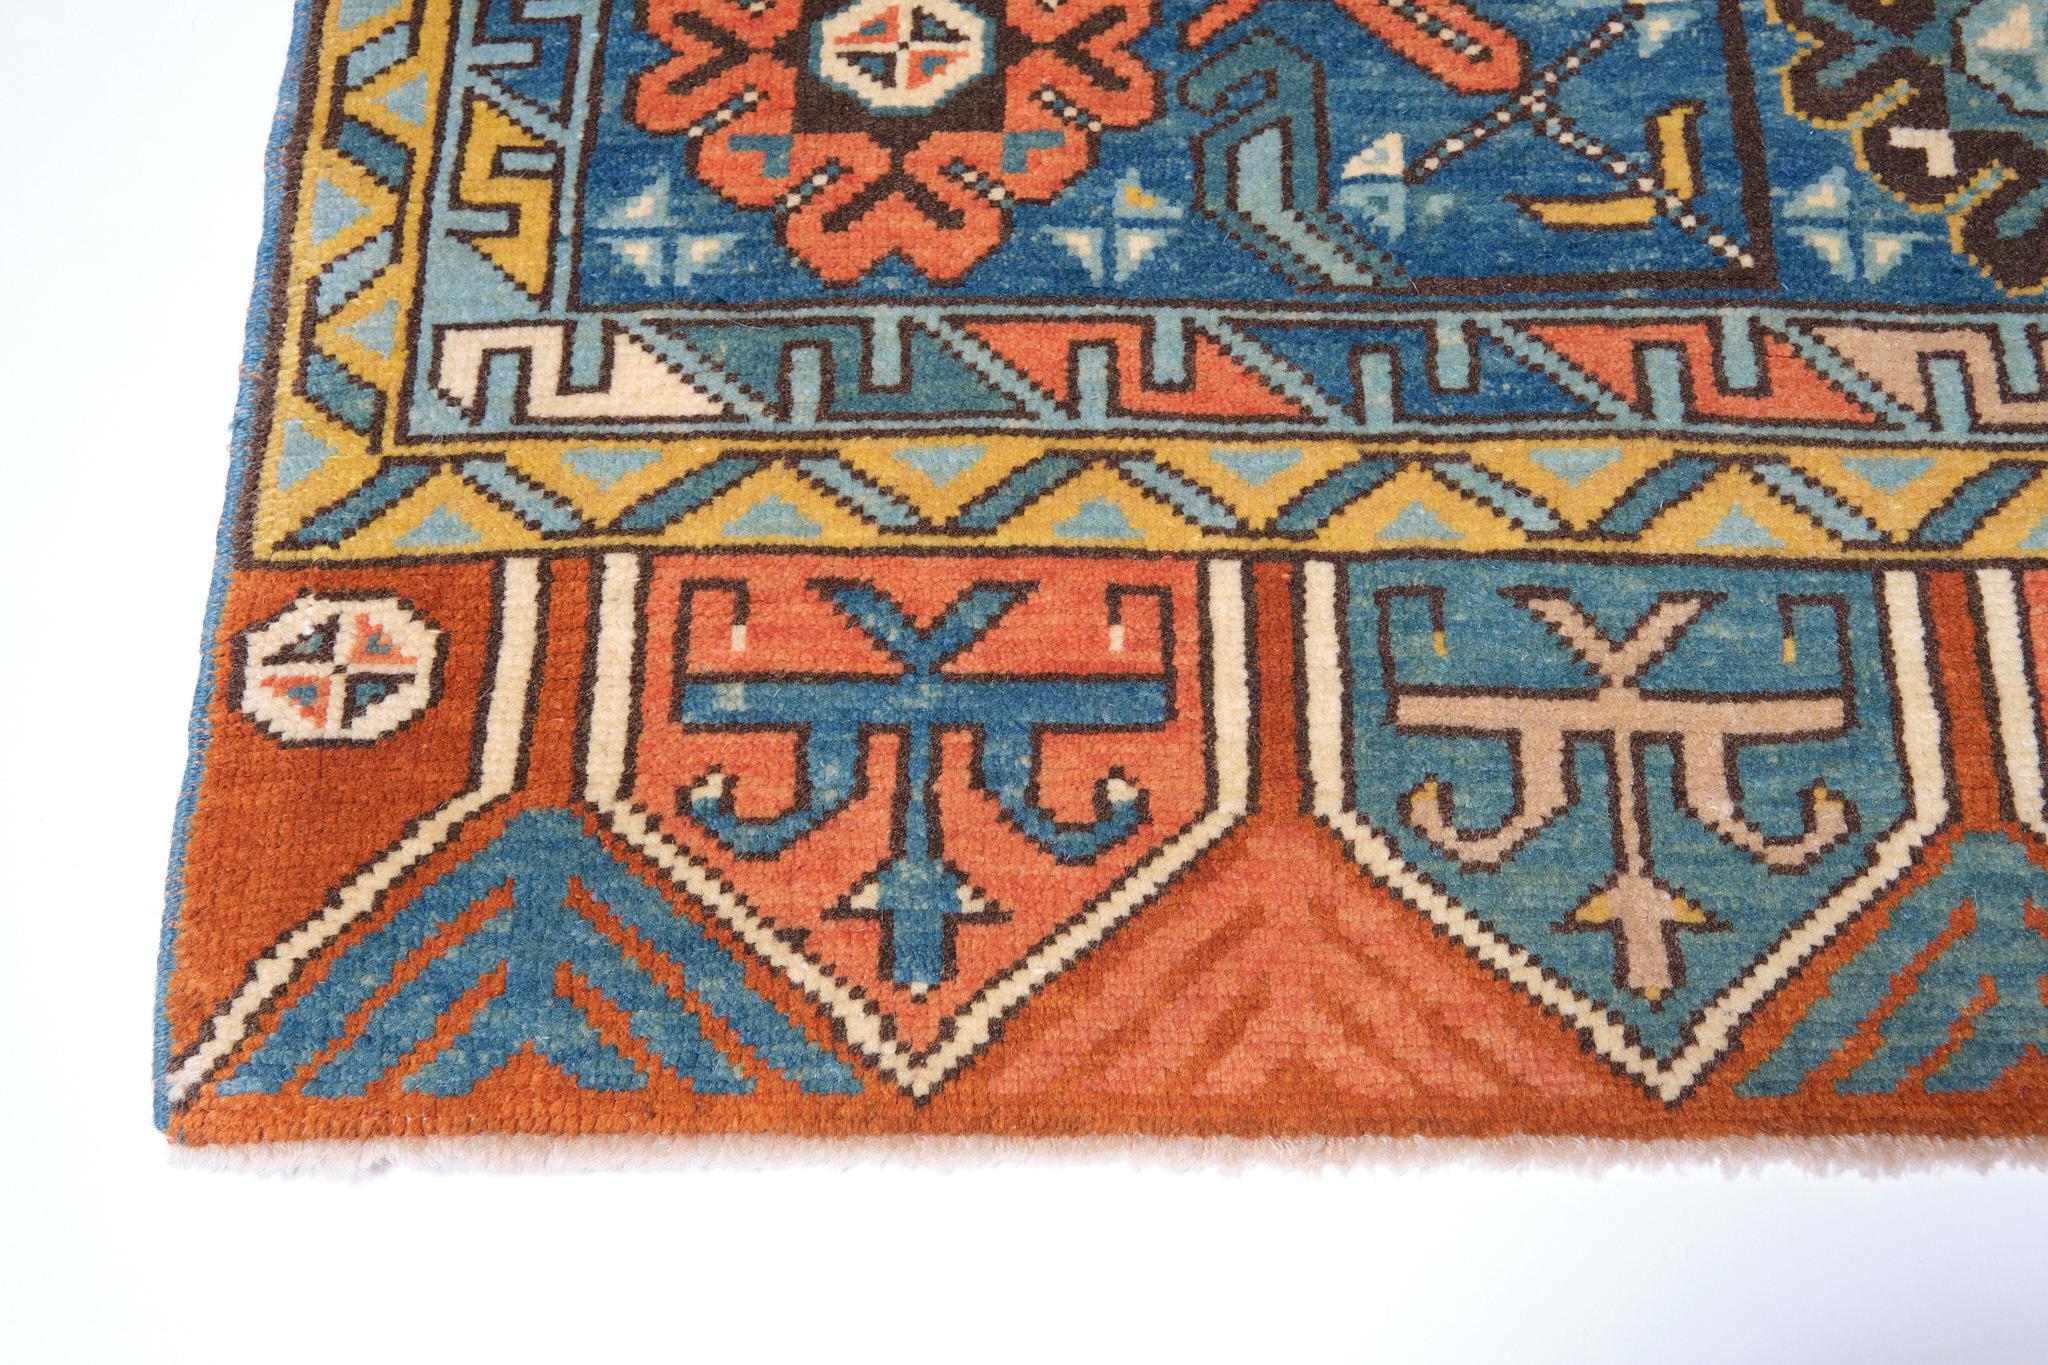 Il s'agit d'un double médaillon qui constitue l'élément principal du motif d'un tapis du XVIIIe siècle provenant de la région de Konya, en Anatolie centrale, en Turquie. Les tapis de ce type, utilisant deux médaillons, apparaissent fréquemment dans